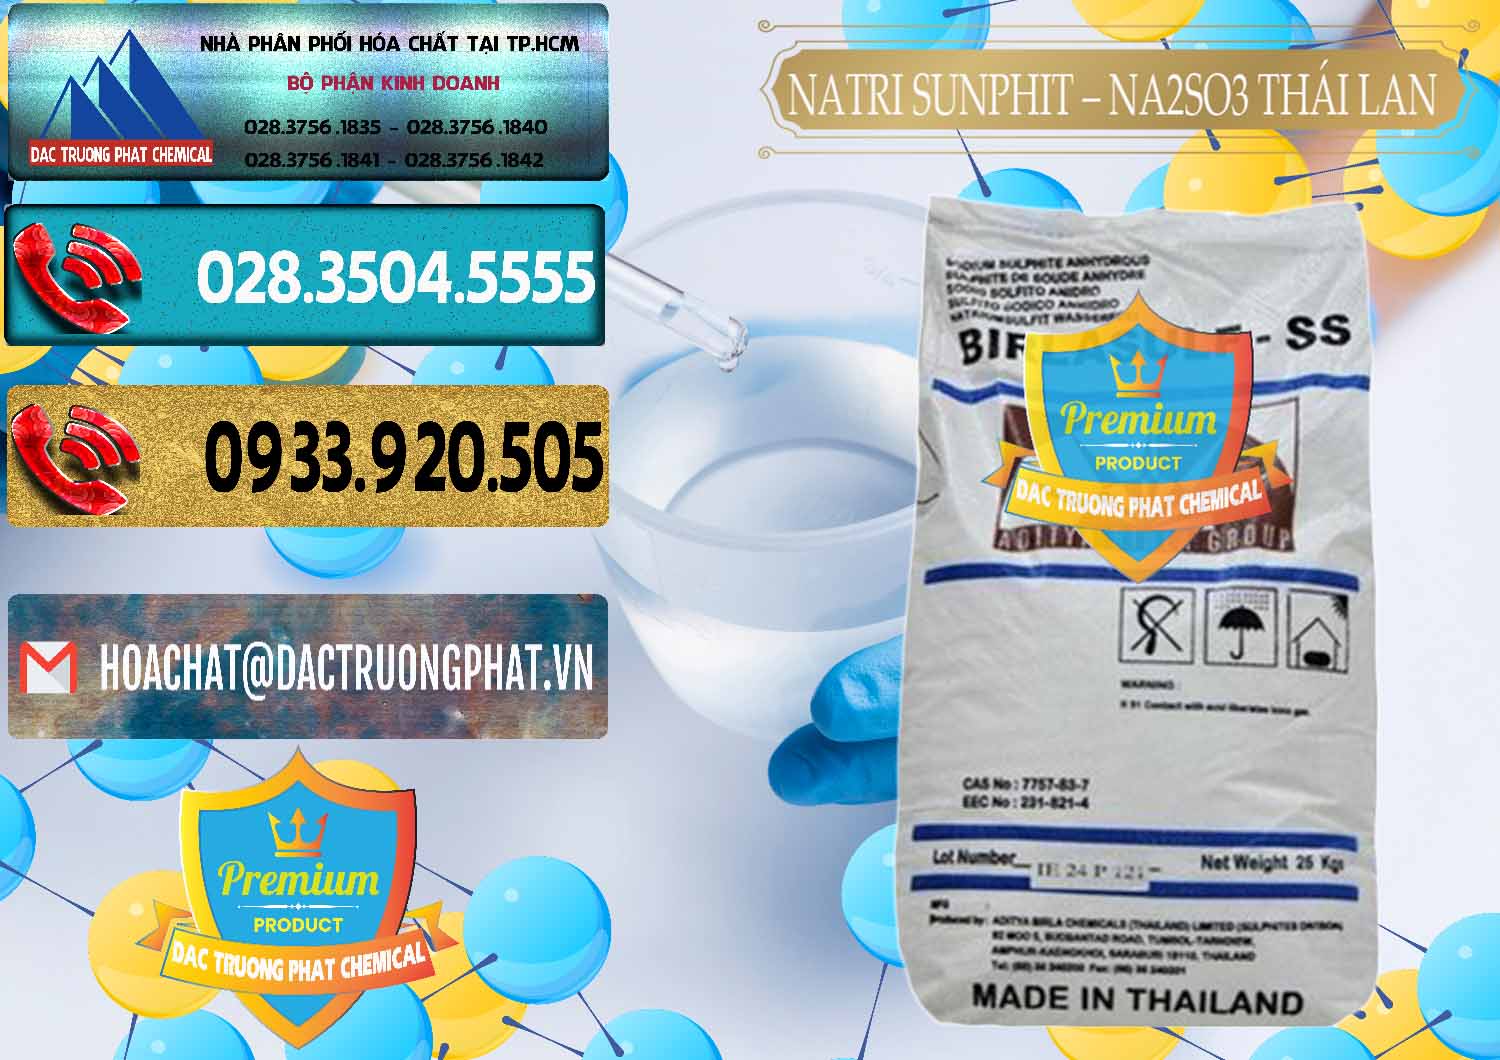 Đơn vị bán ( cung cấp ) Natri Sunphit - NA2SO3 Thái Lan - 0105 - Nơi chuyên bán - phân phối hóa chất tại TP.HCM - hoachatdetnhuom.com